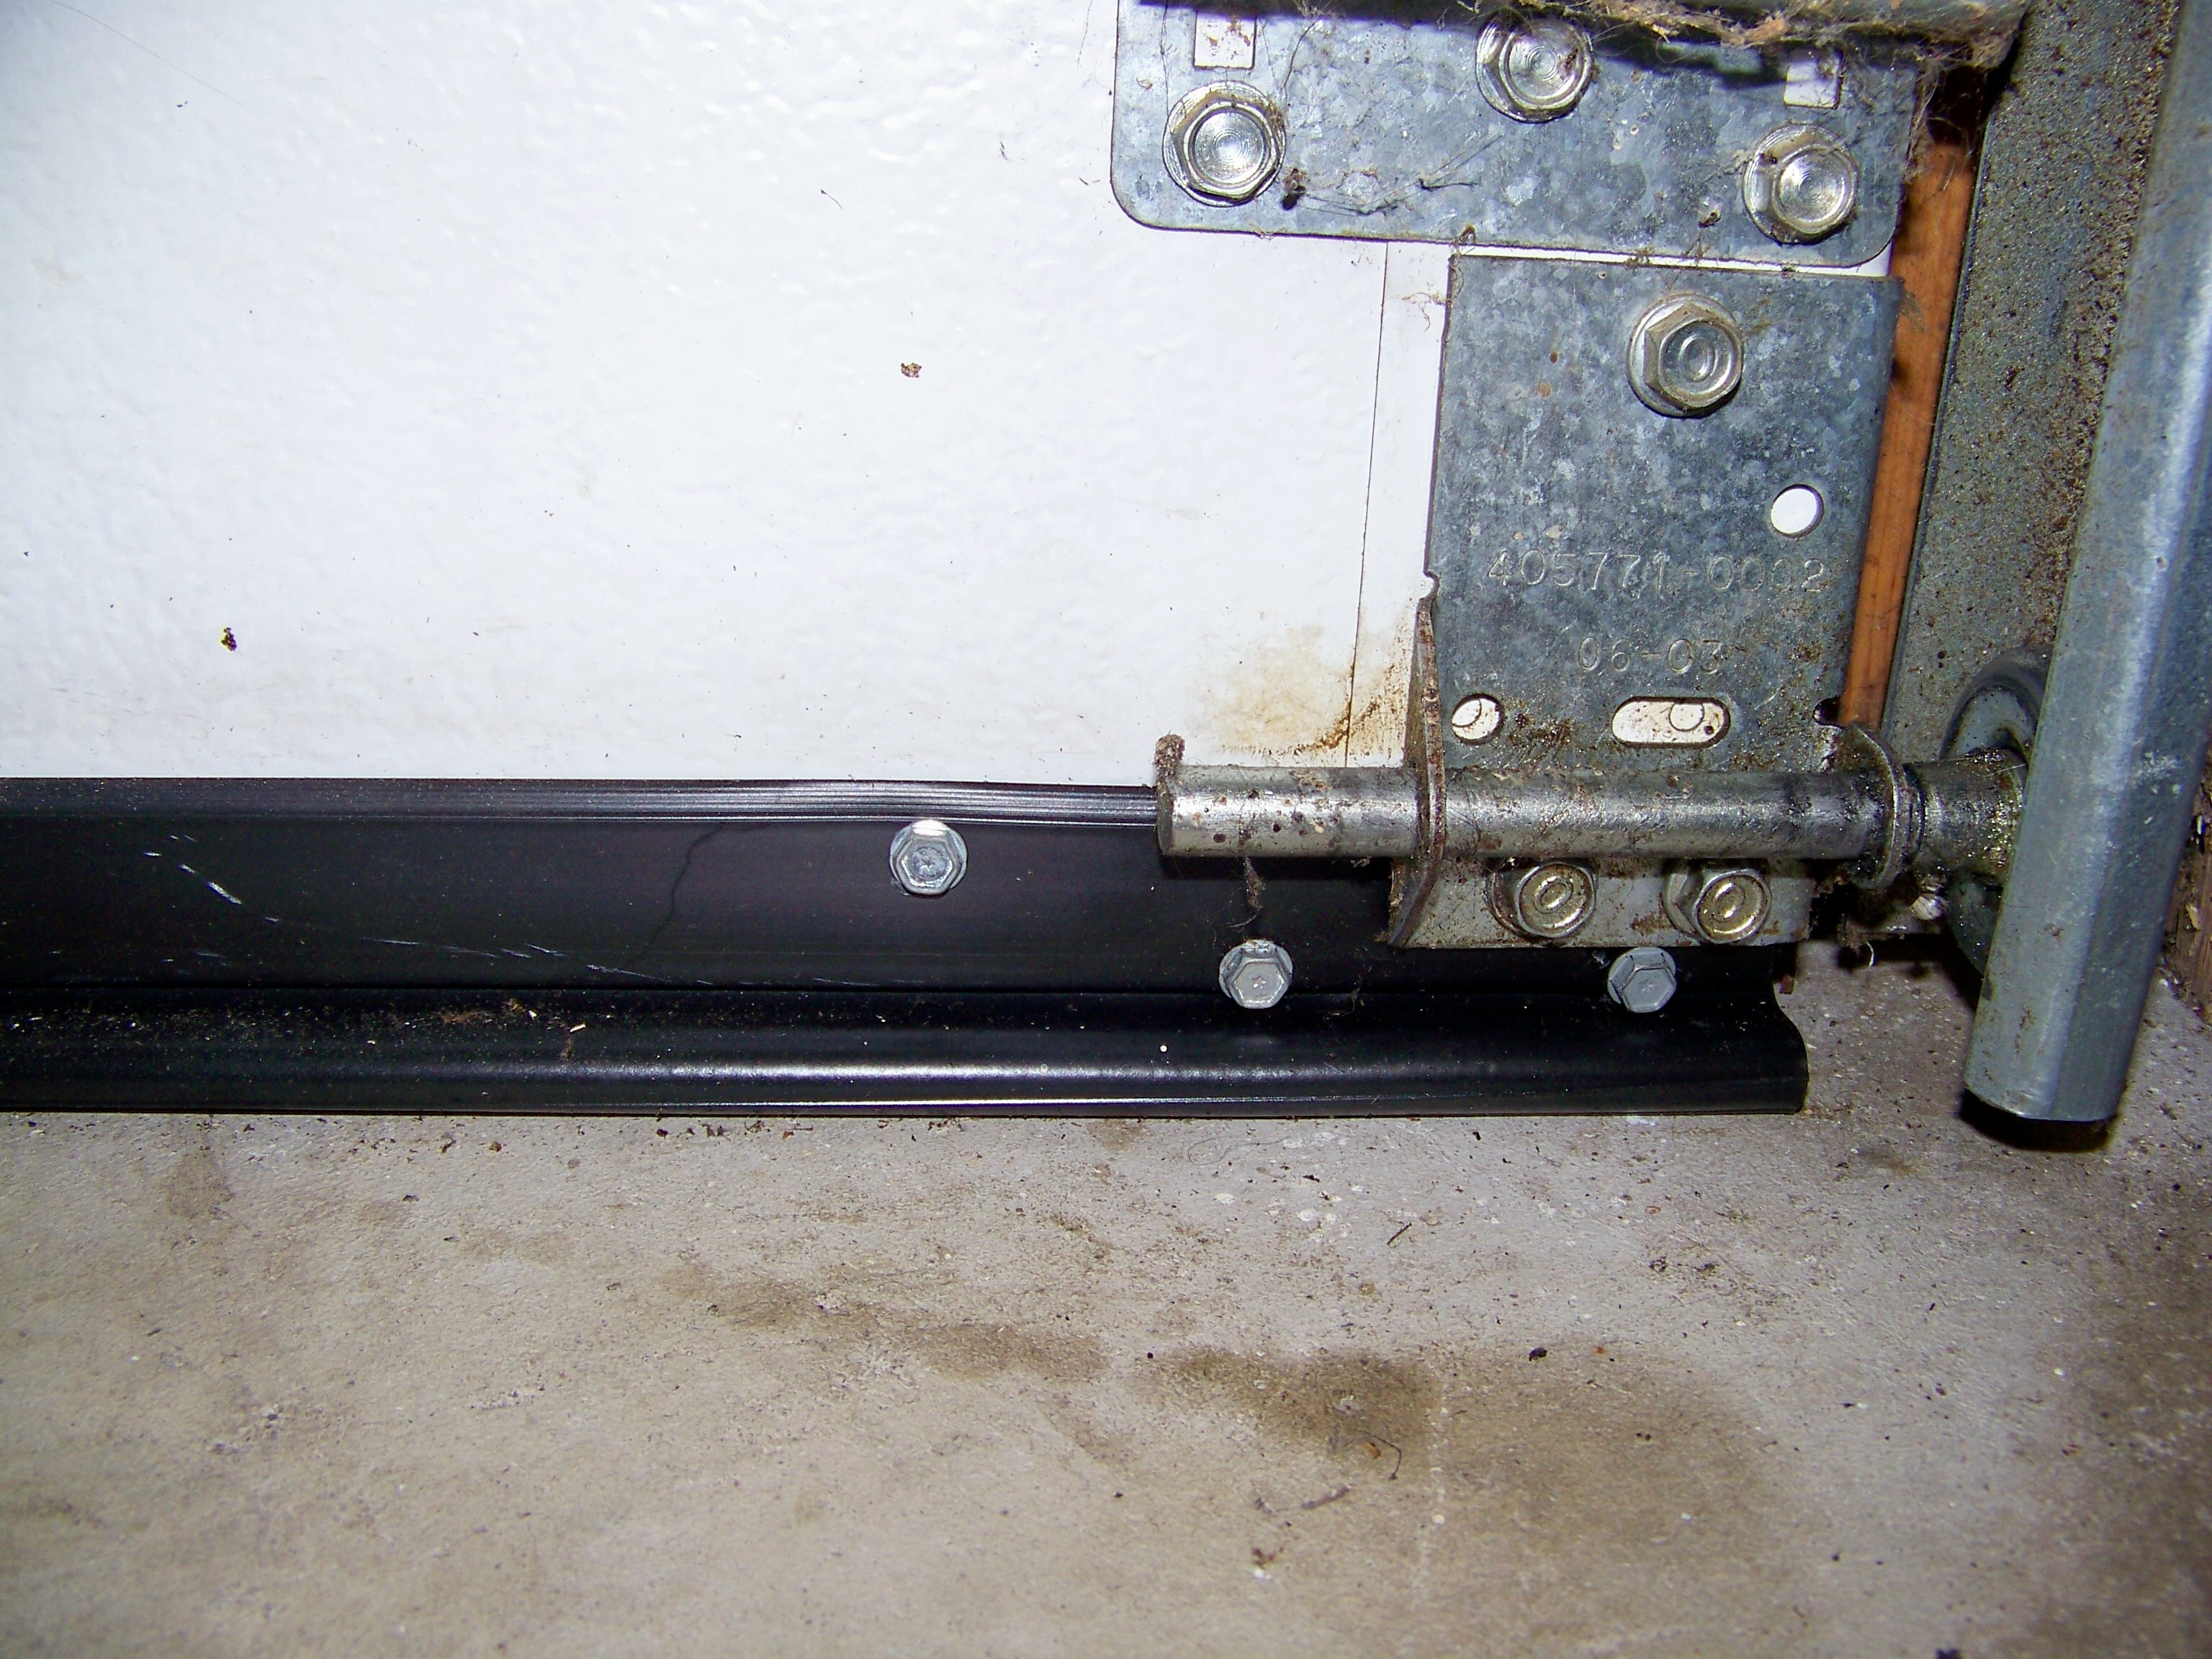 Installing Garage Door Bottom Seal Kits, How To Install Garage Bottom Seal